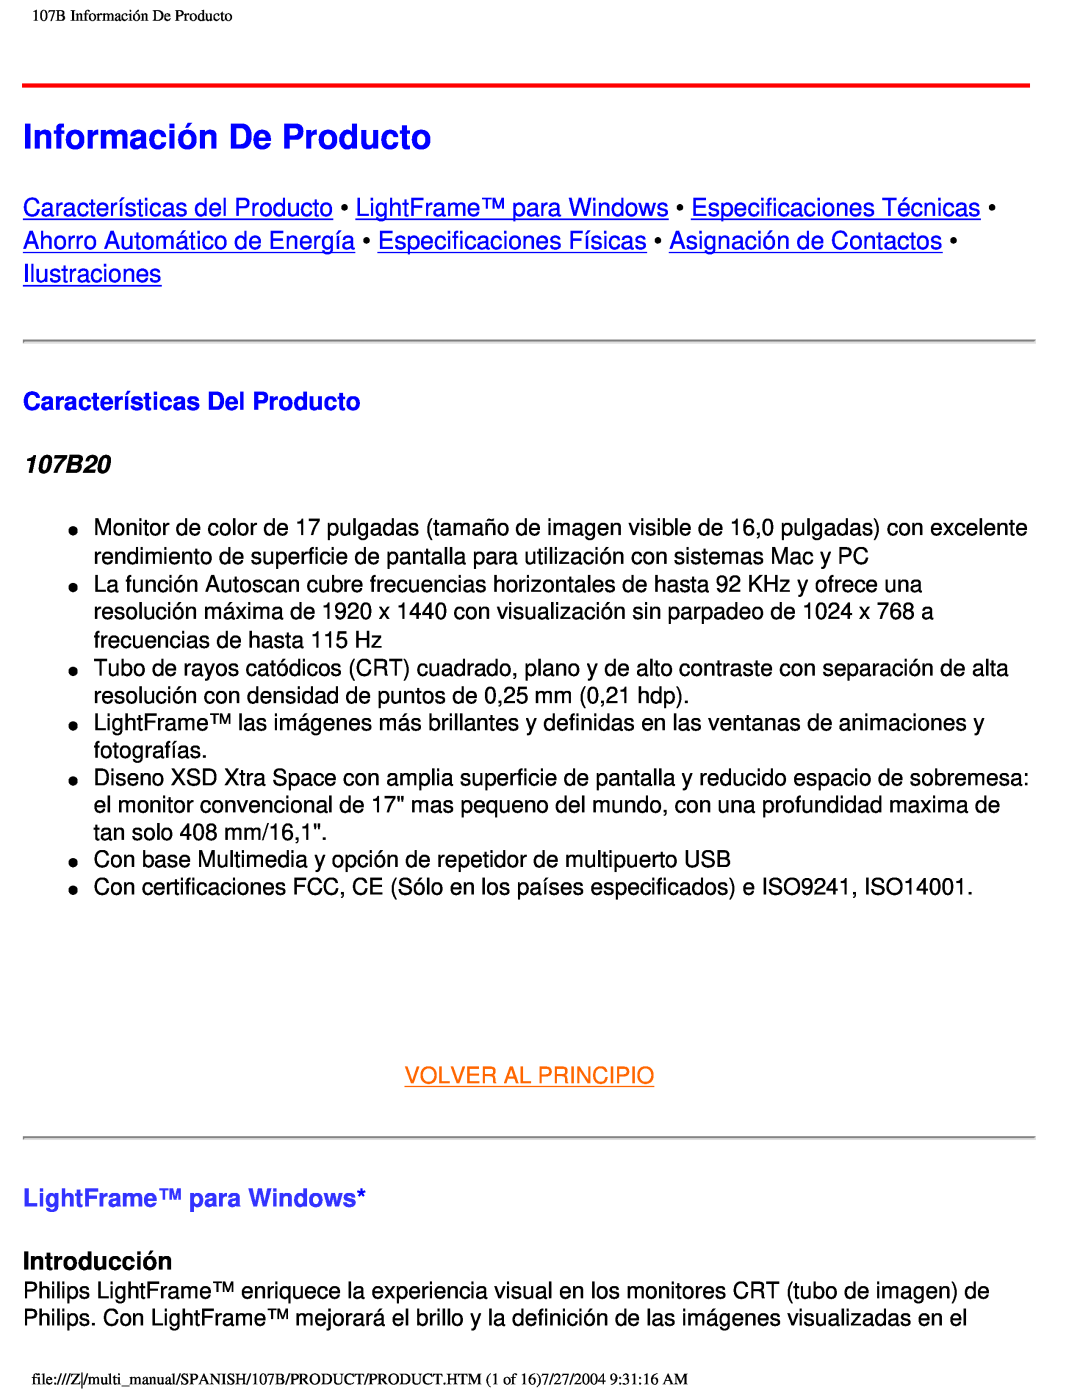 Philips user manual Información De Producto, Características Del Producto, 107B20, LightFrame para Windows, Introducción 